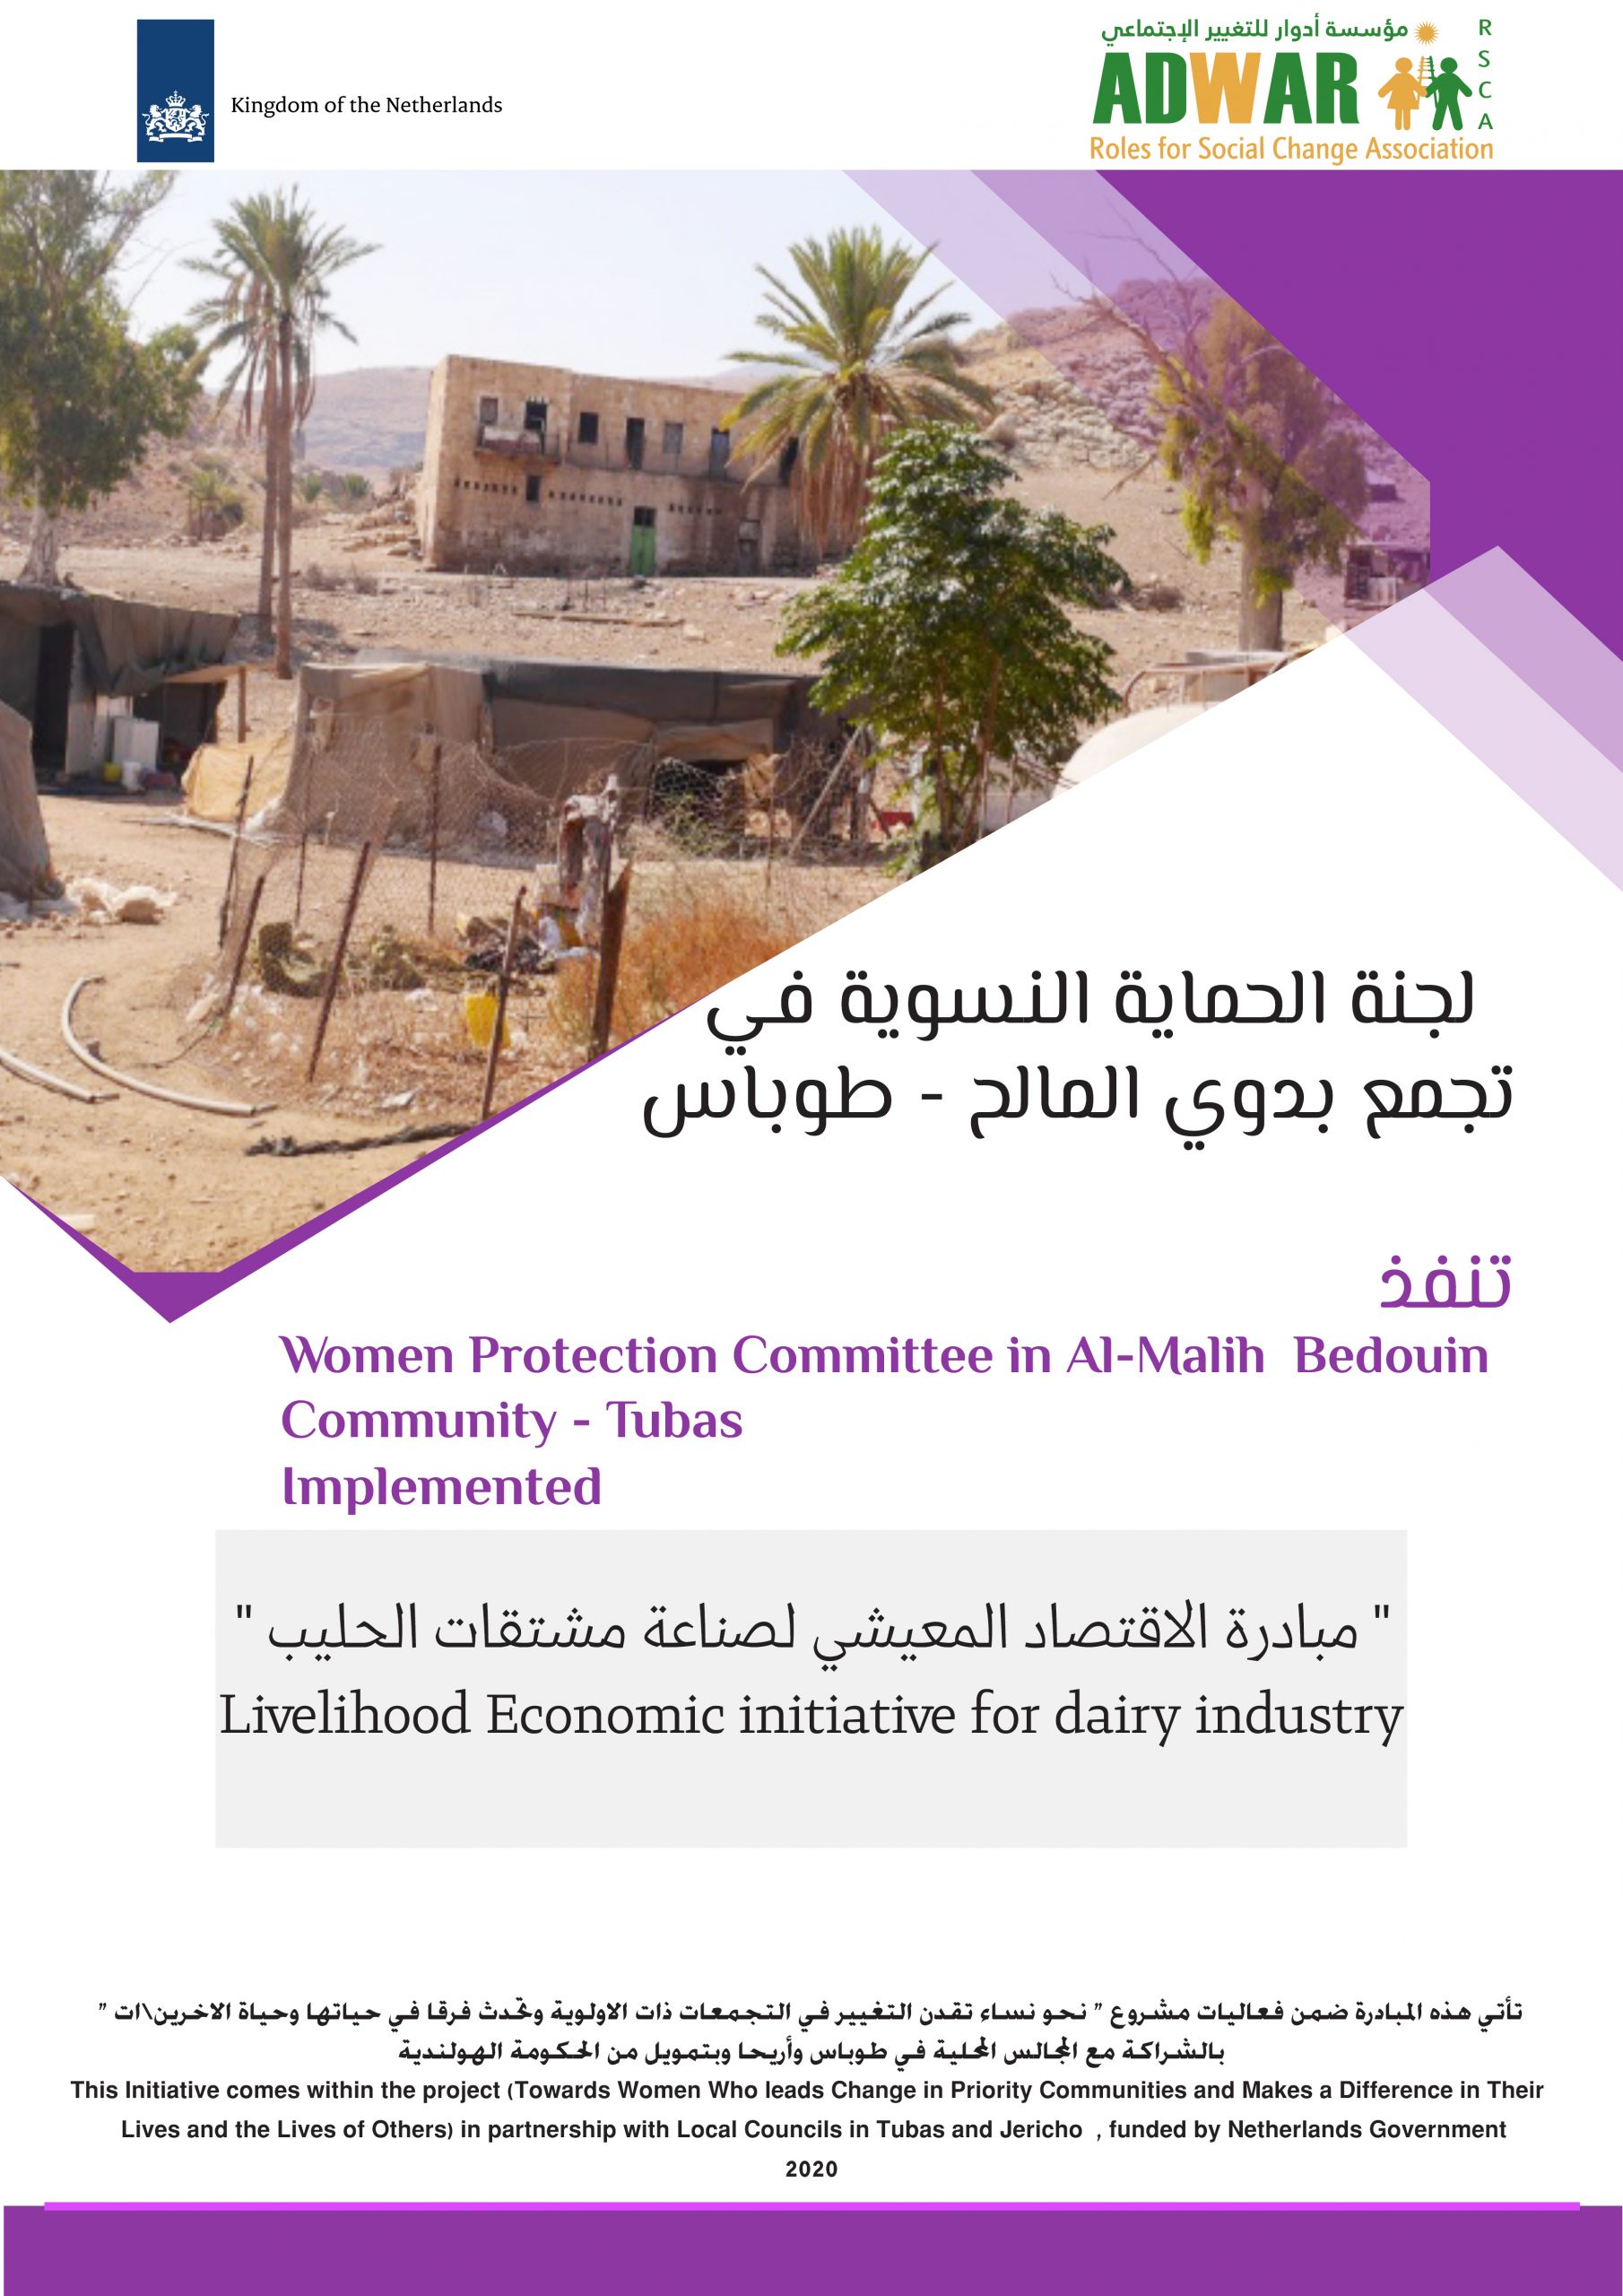  لجنة الحماية النسوية في تجمع بدوي المالح ـ طوباس